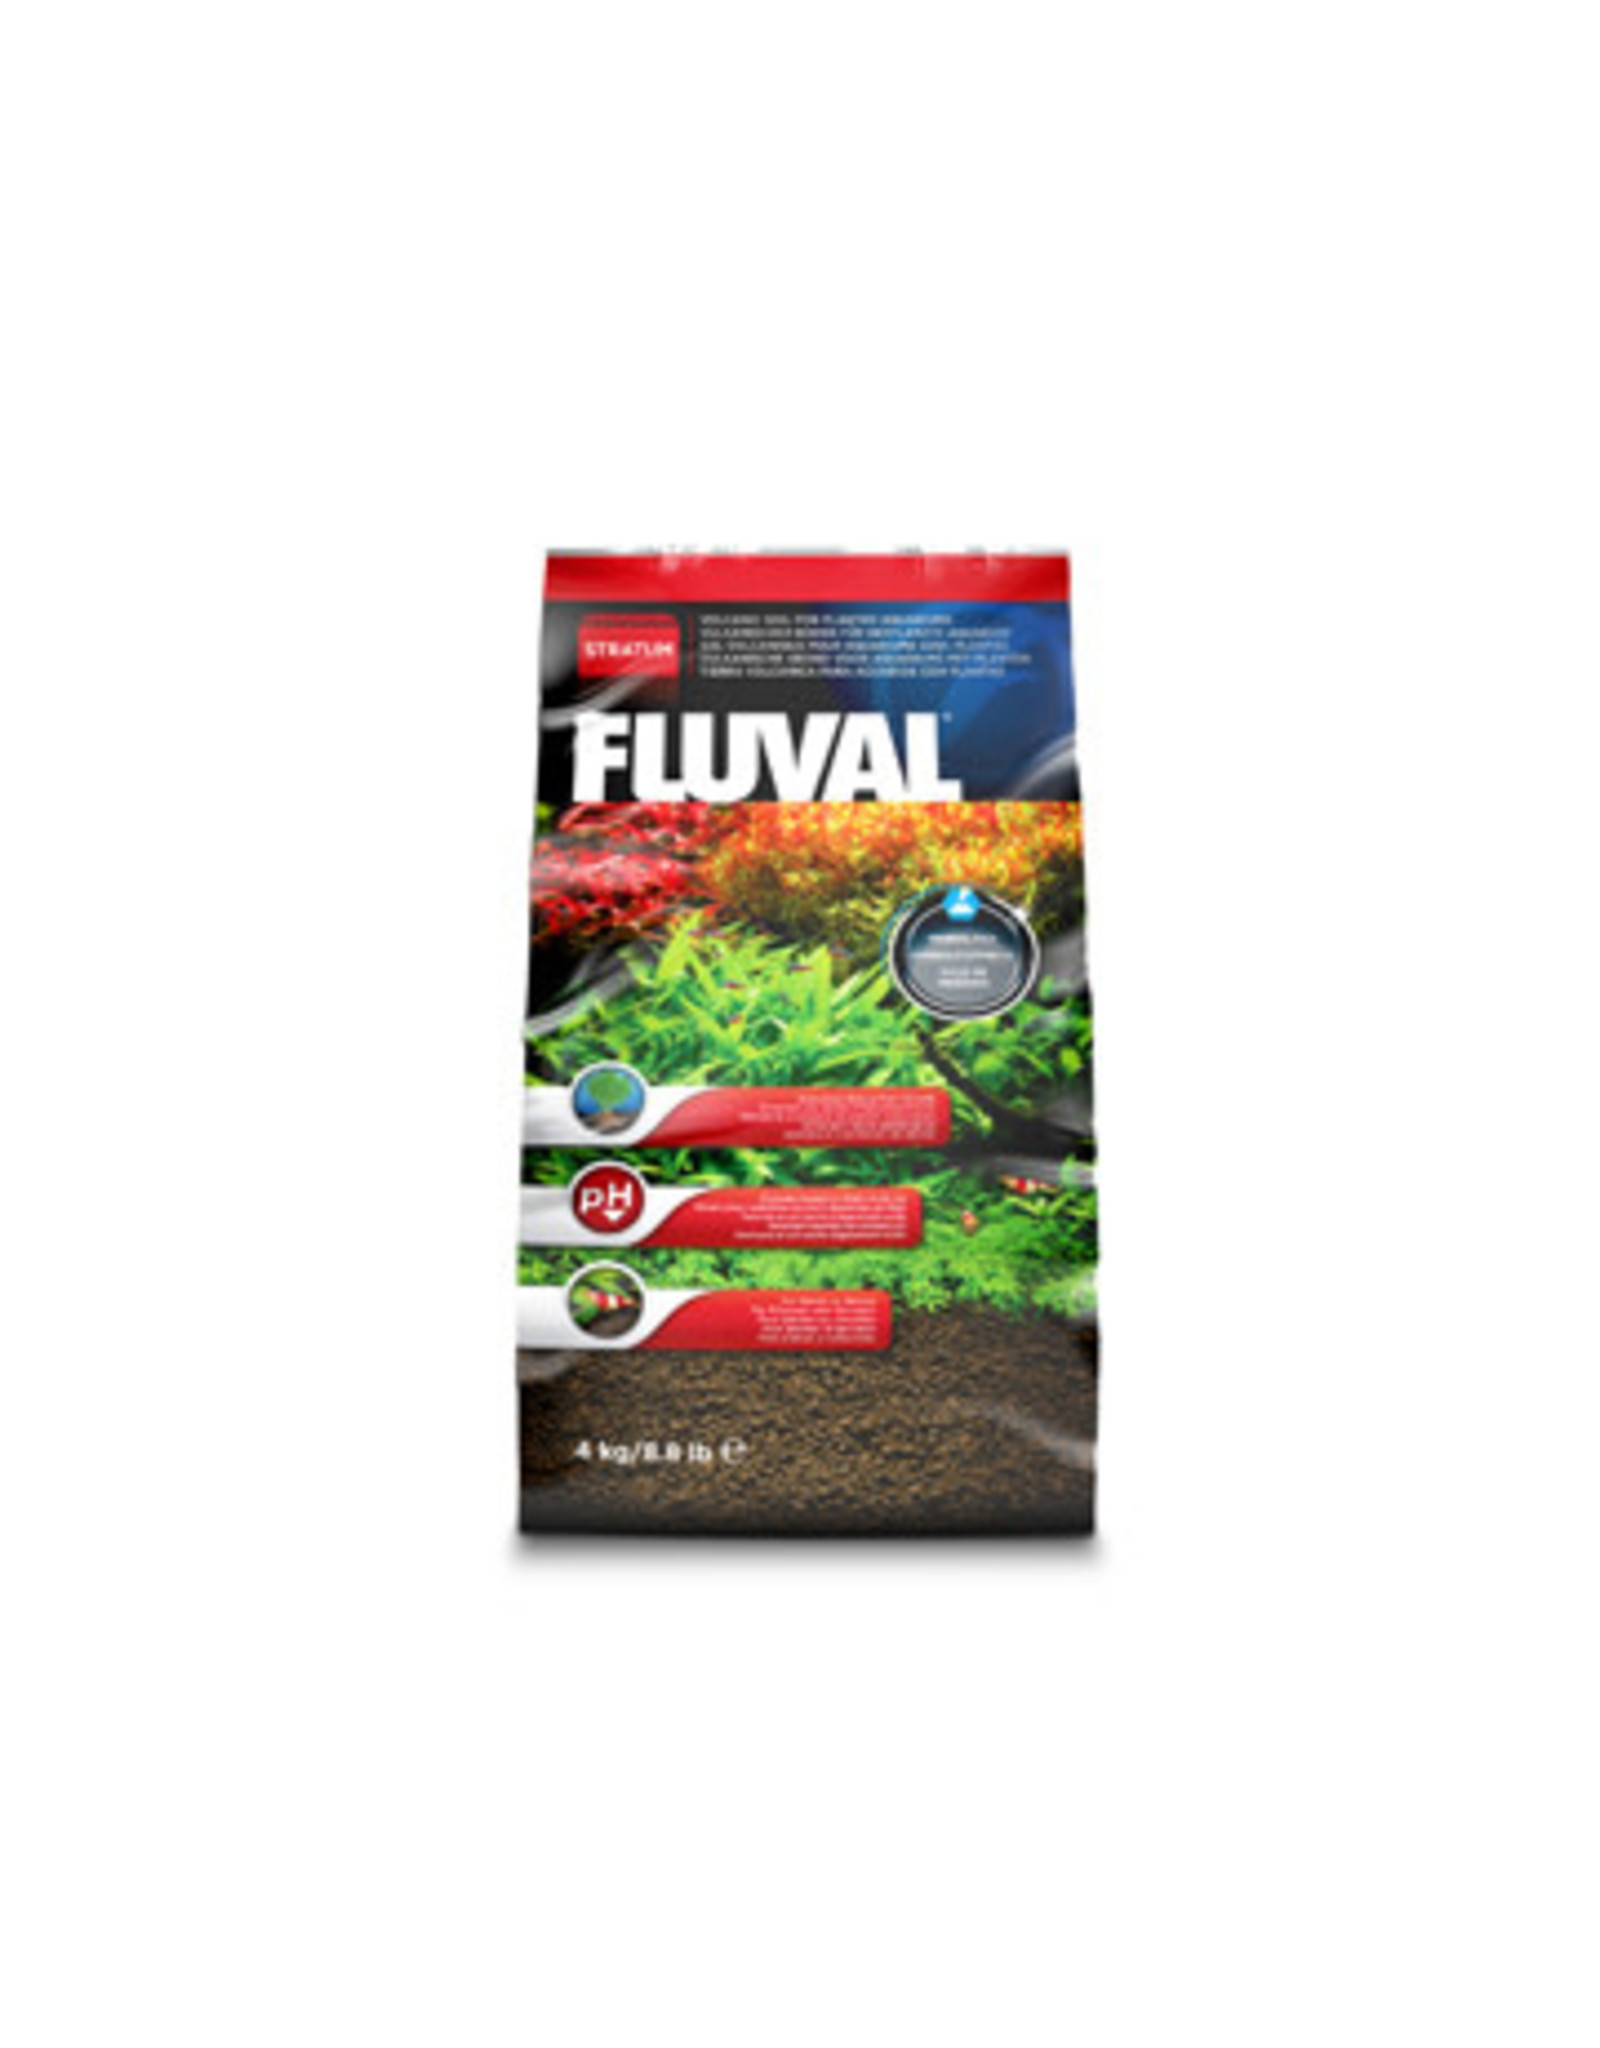 Fluval Fluval Plant and Shrimp Stratum - 4 Kg / 8.8 lb